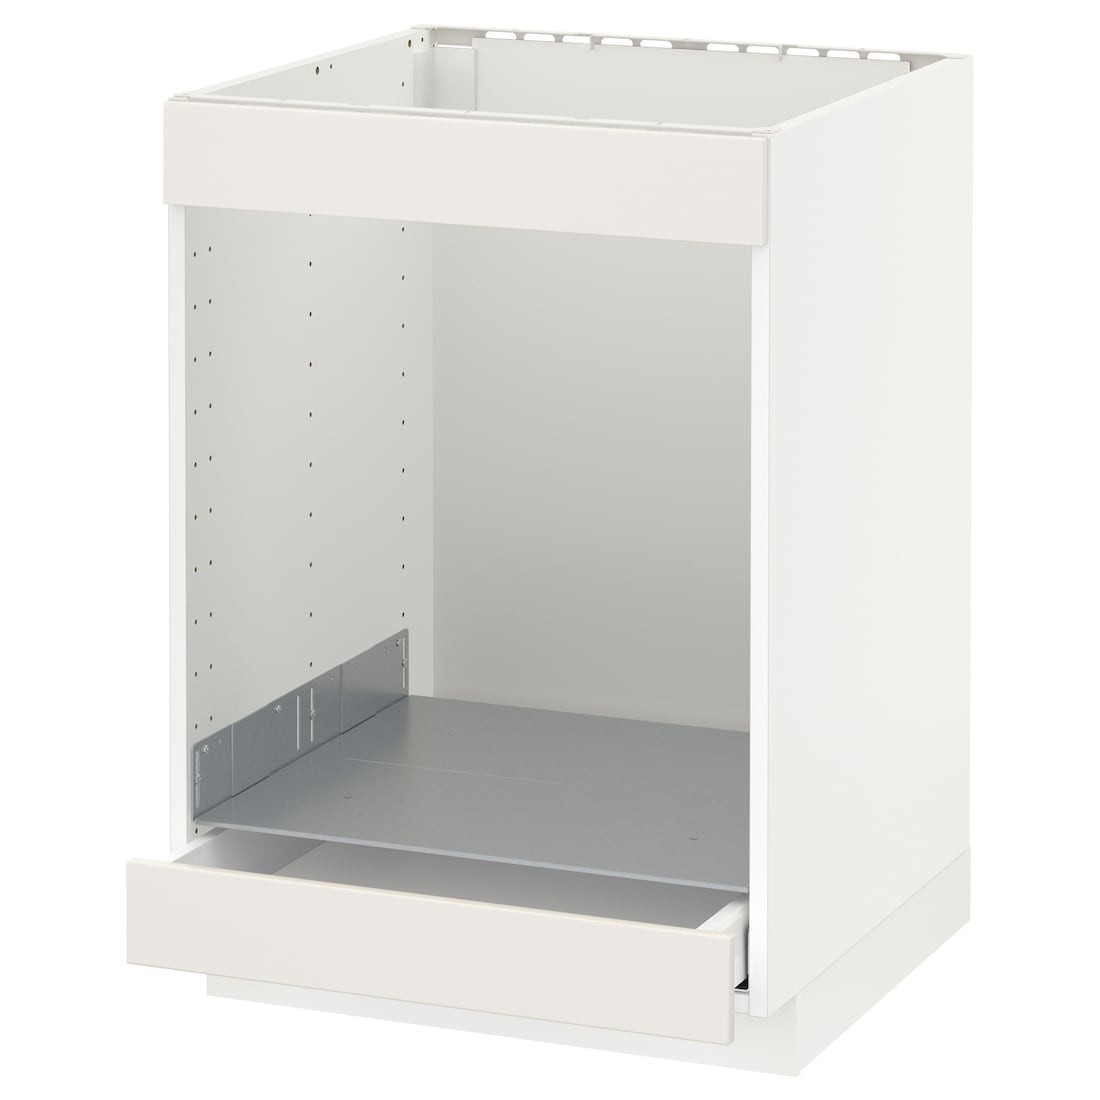 IKEA METOD МЕТОД / MAXIMERA МАКСИМЕРА Шкаф под духовку / варочную поверхность / с ящиком, белый / Veddinge белый, 60x60 см 59004402 590.044.02